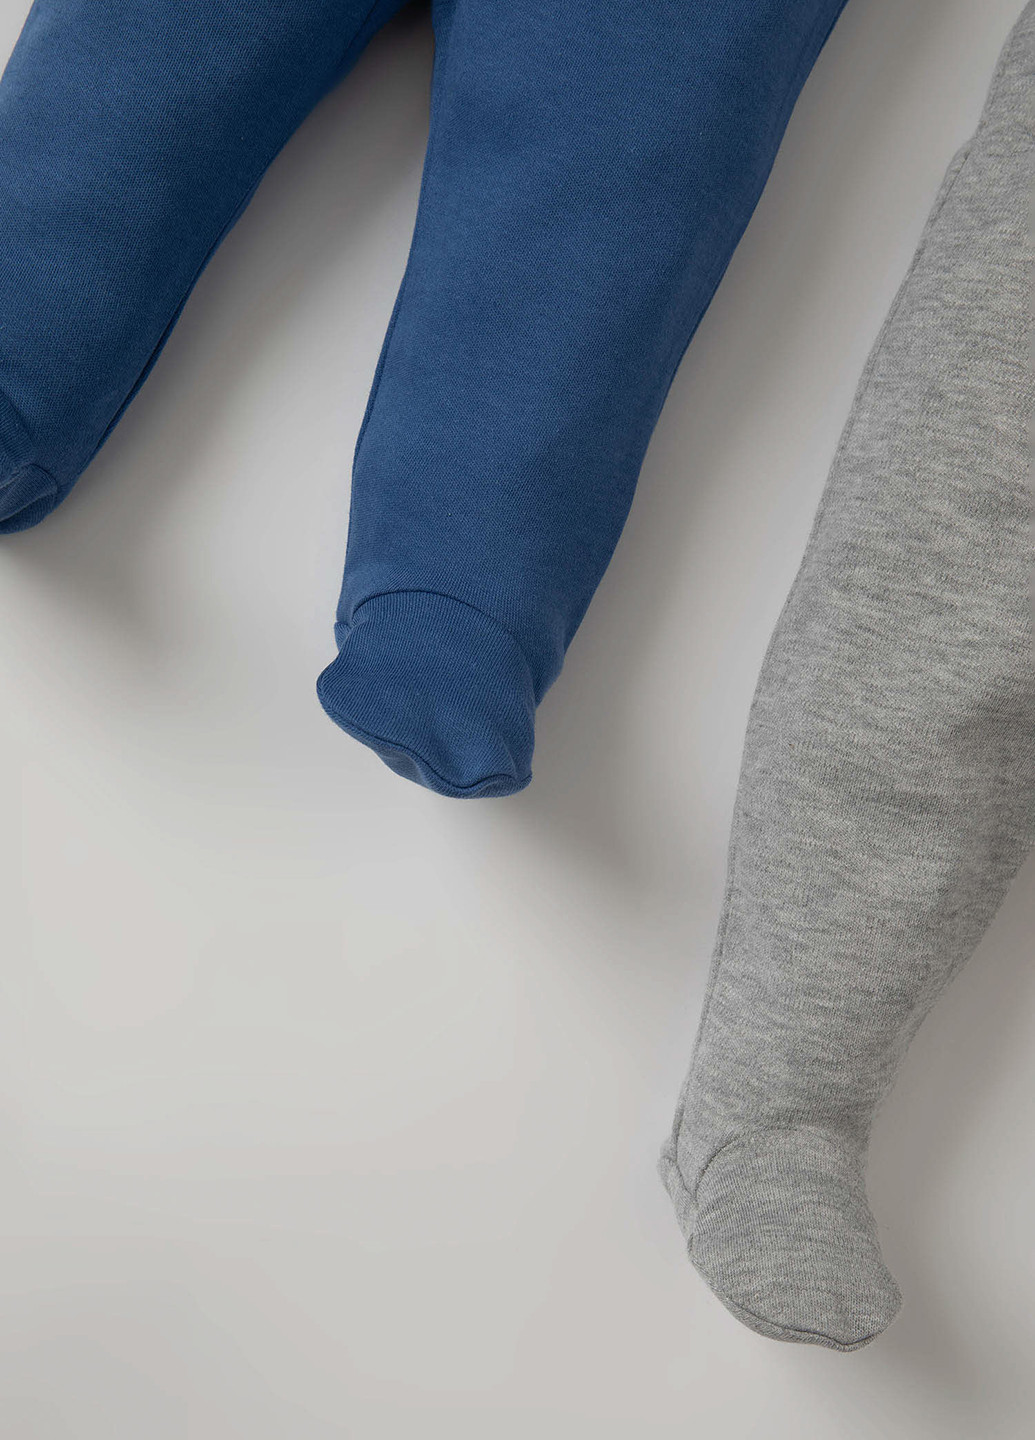 DeFacto брюки комбинированный домашний хлопок, трикотаж производство - Турция